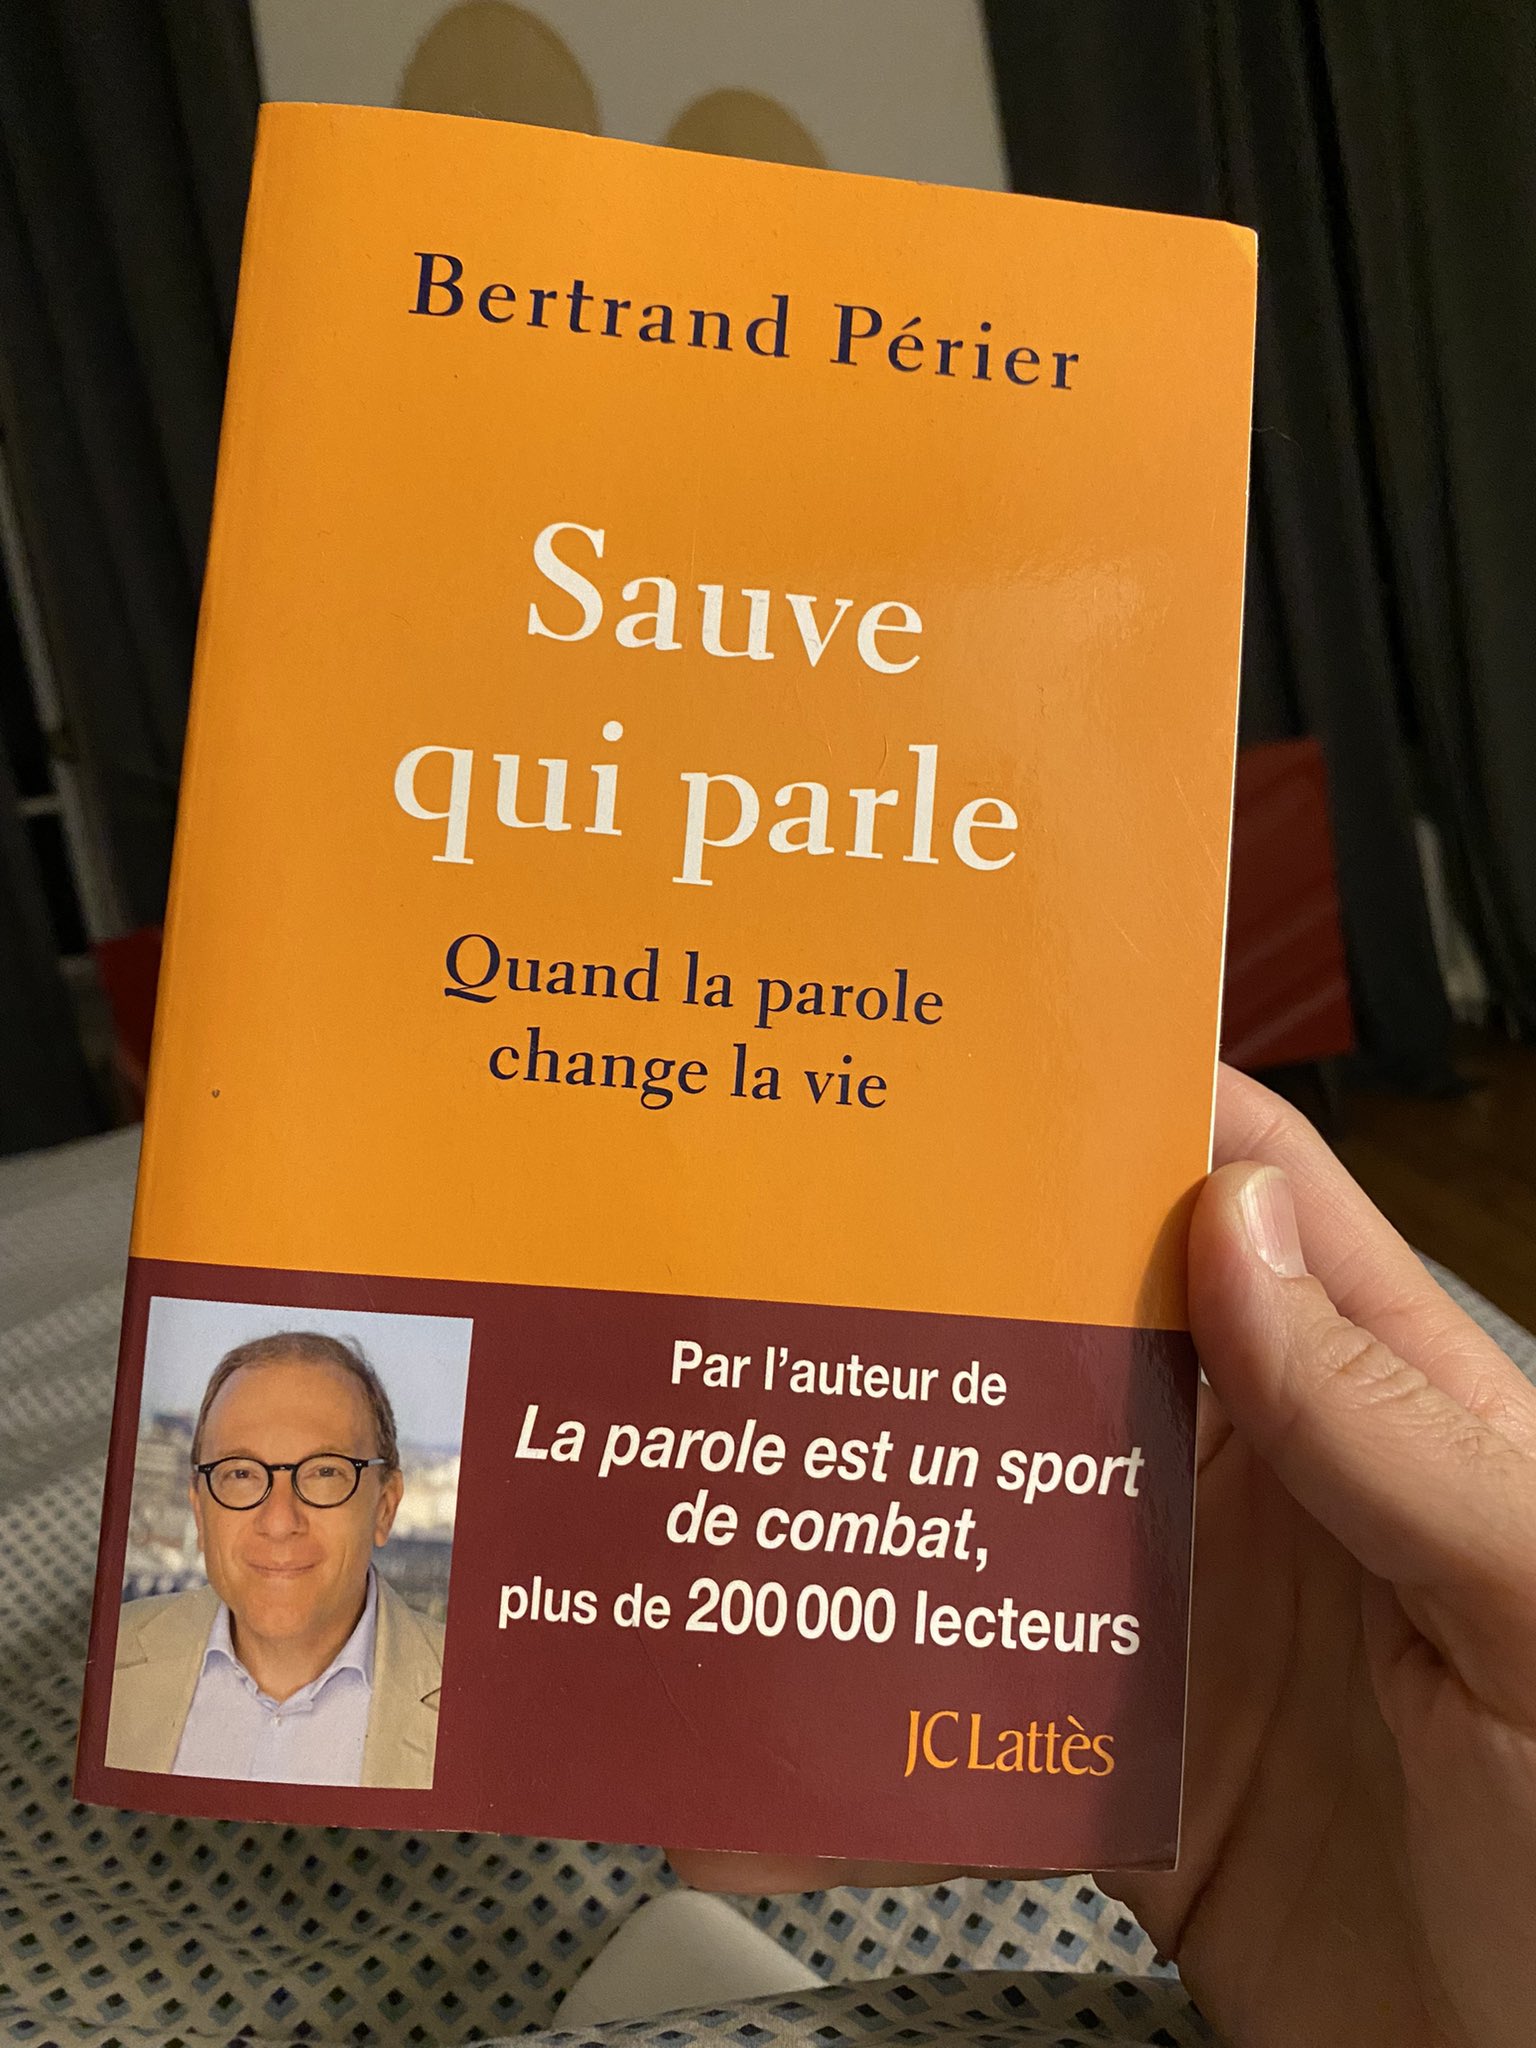 Bertrand Perier on X: Merci @Tof_Beaugrand !! Bonne lecture à toi